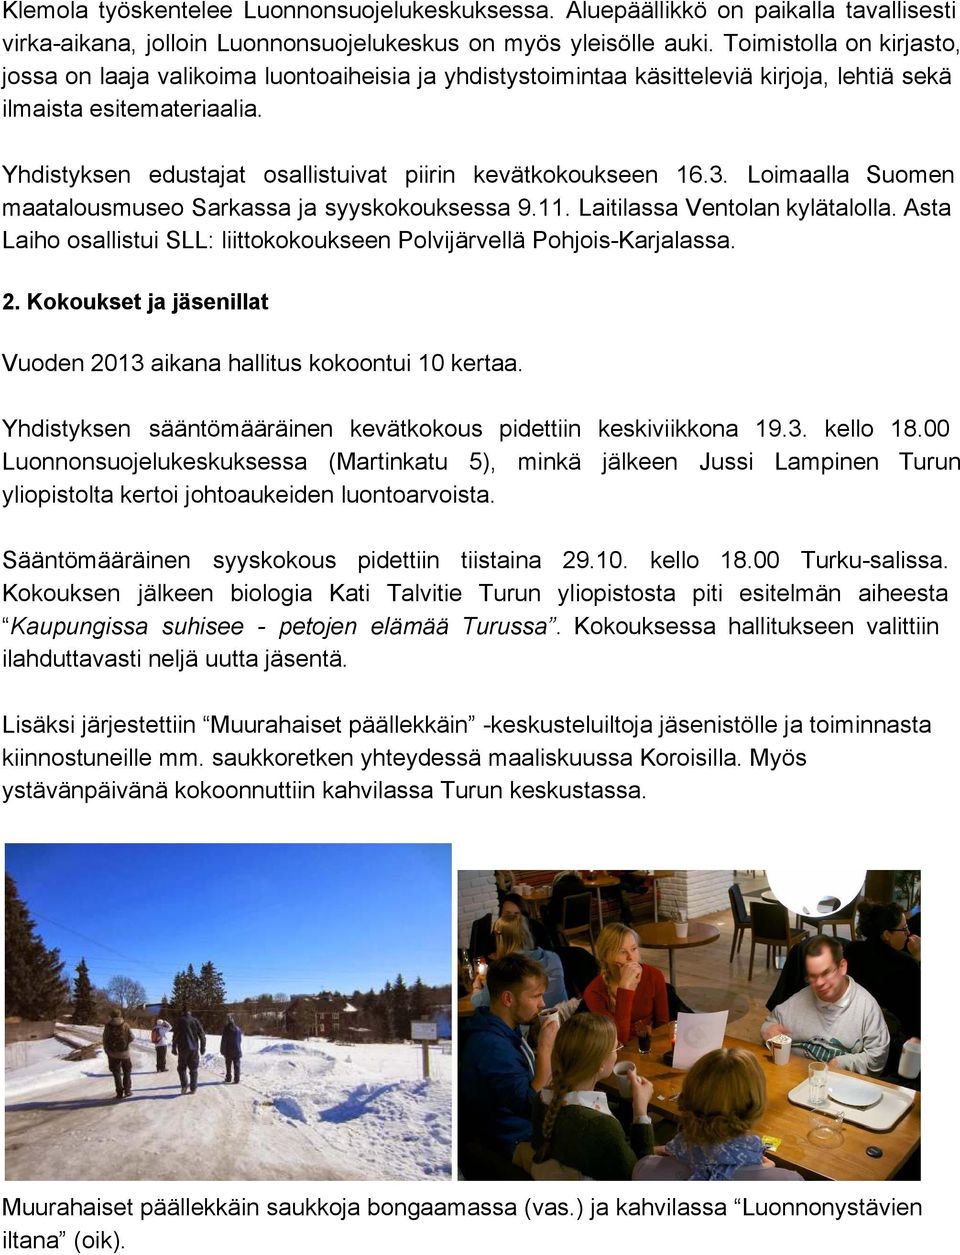 Yhdistyksen edustajat osallistuivat piirin kevätkokoukseen 16.3. Loimaalla Suomen maatalousmuseo Sarkassa ja syyskokouksessa 9.11. Laitilassa Ventolan kylätalolla.